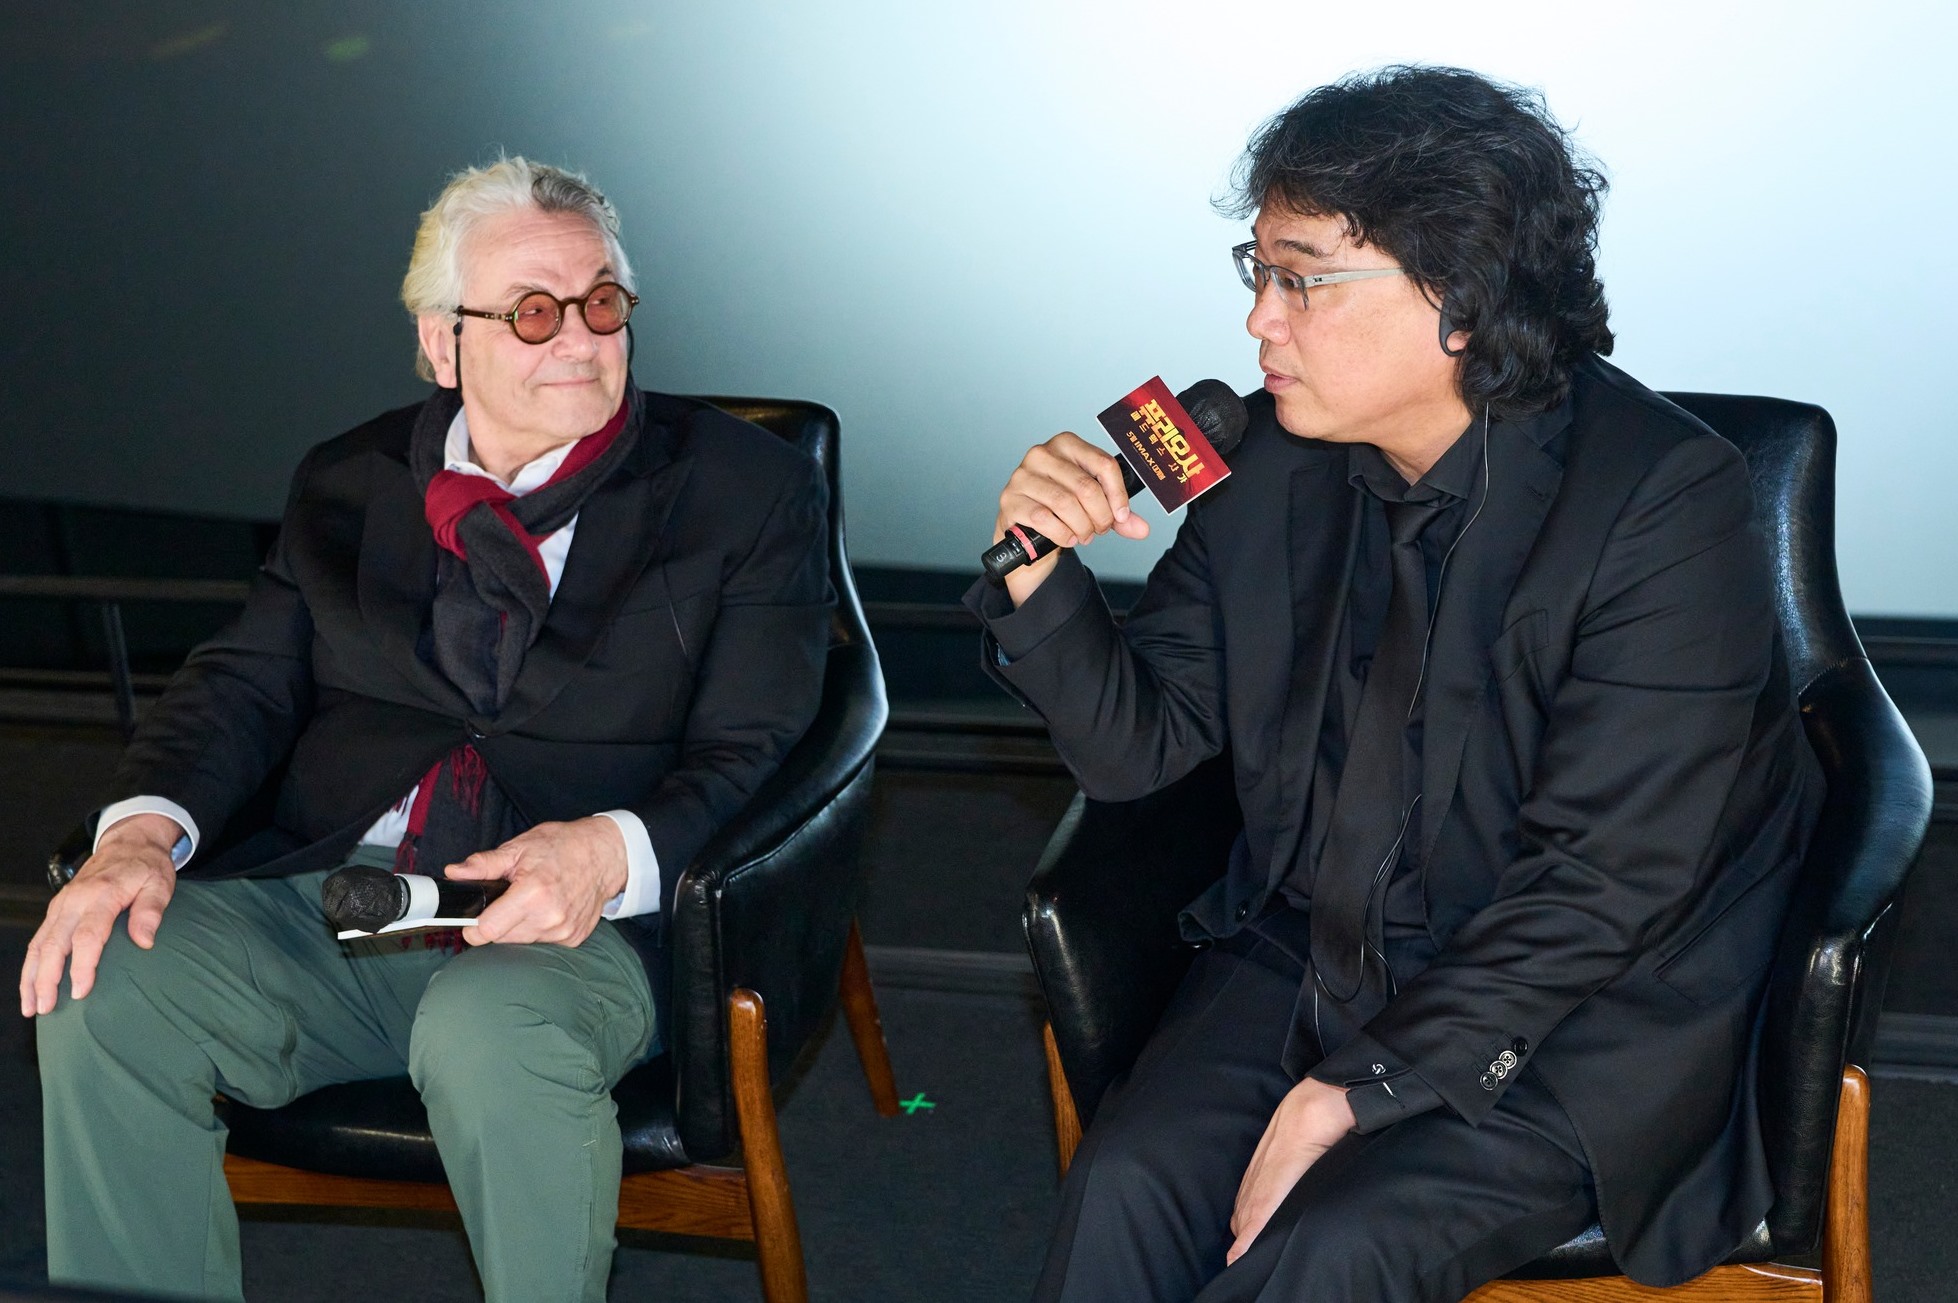 조지 밀러 감독(왼쪽)과 봉준호가 14일 관객과의 질의응답 시간에서 서로의 영화에 대해 이야기를 나누고 있다. 